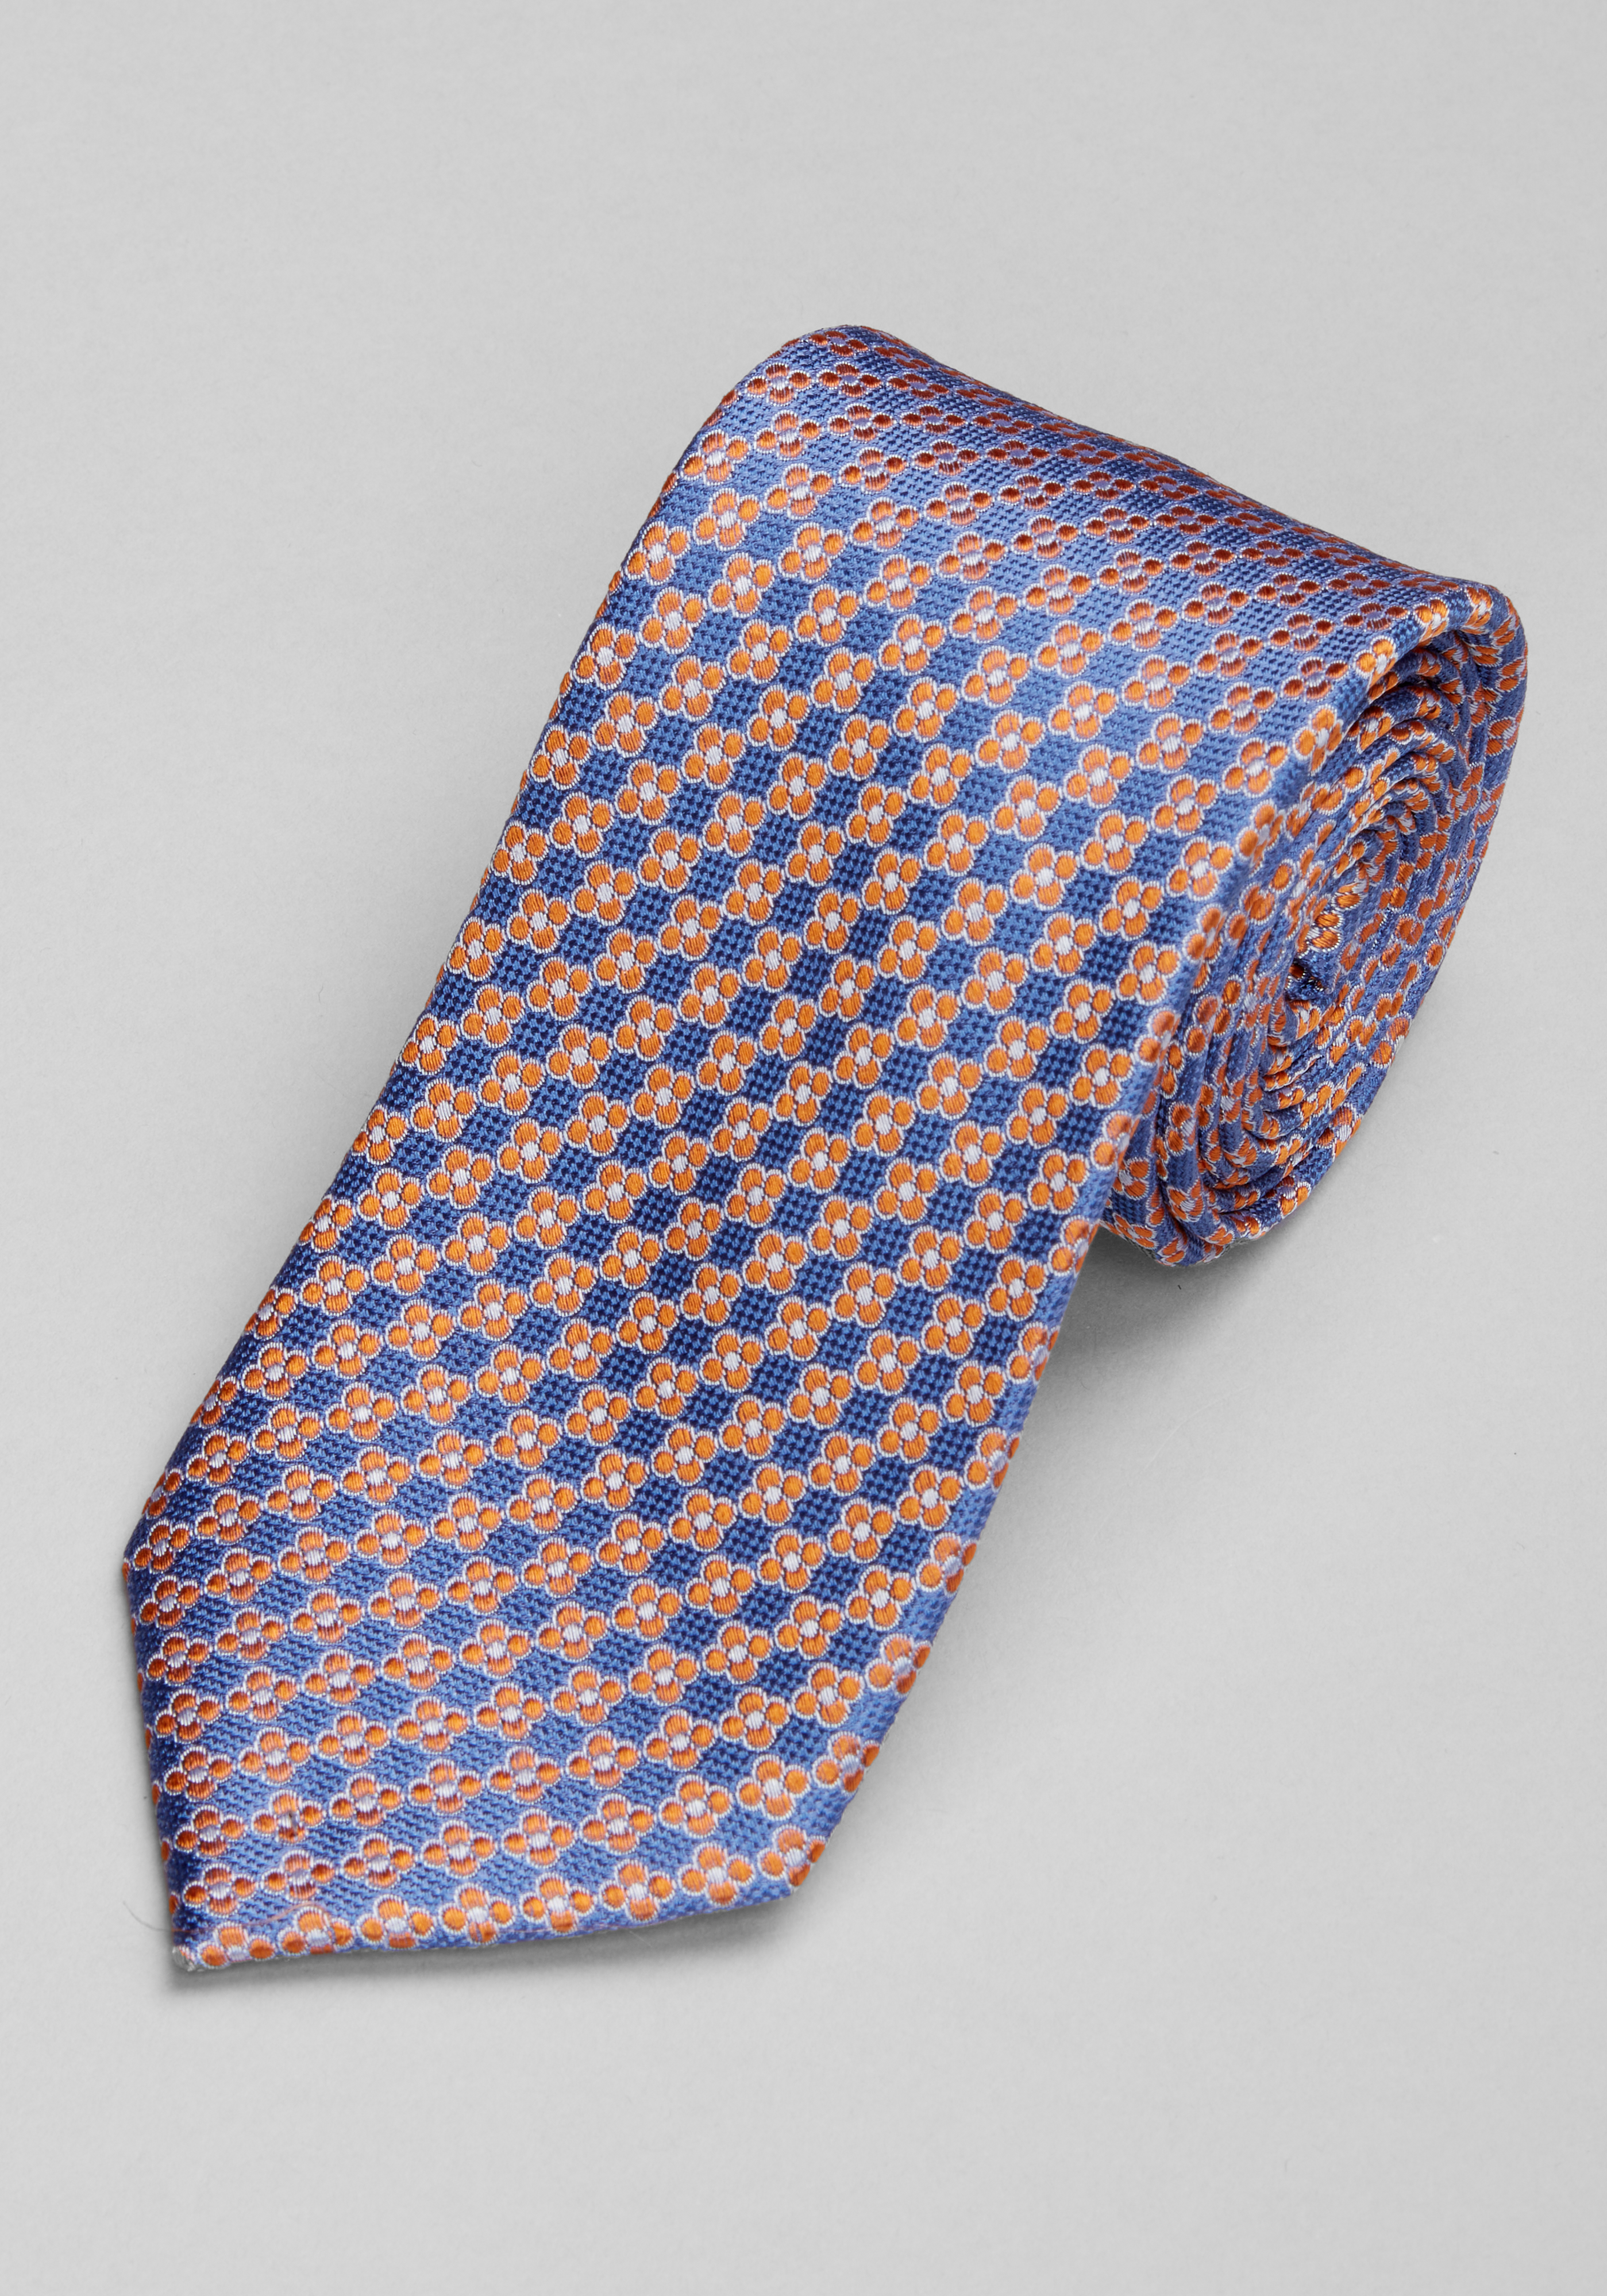 Ties, Neckties & Bow Ties | Men's Neckwear | JoS. A. Bank Clothiers